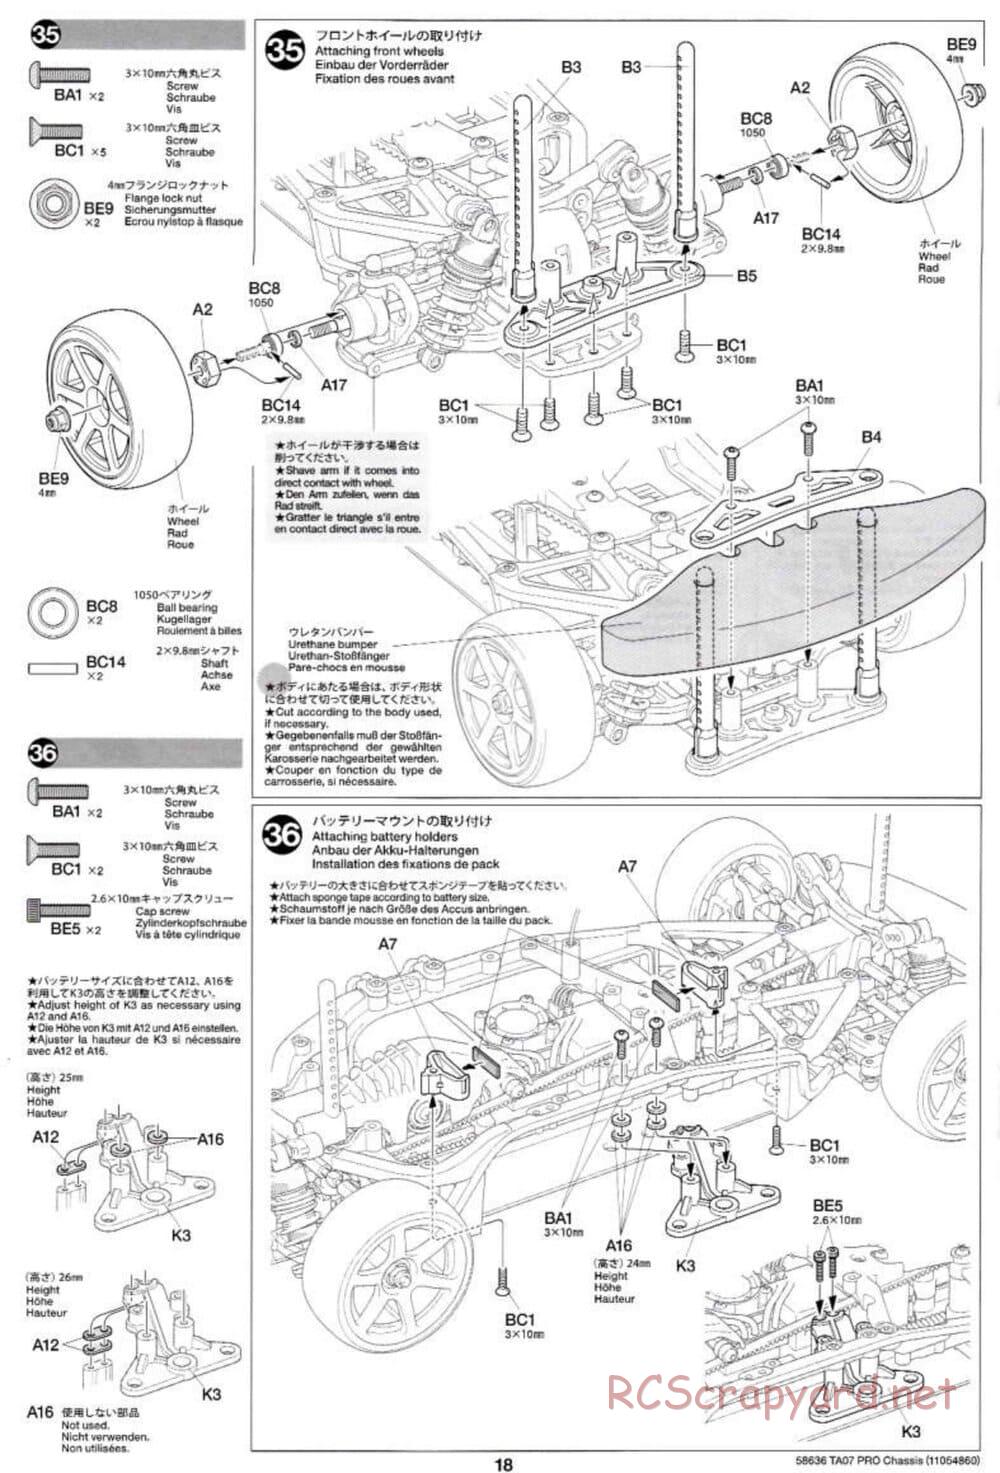 Tamiya - TA07 Pro Chassis - Manual - Page 18